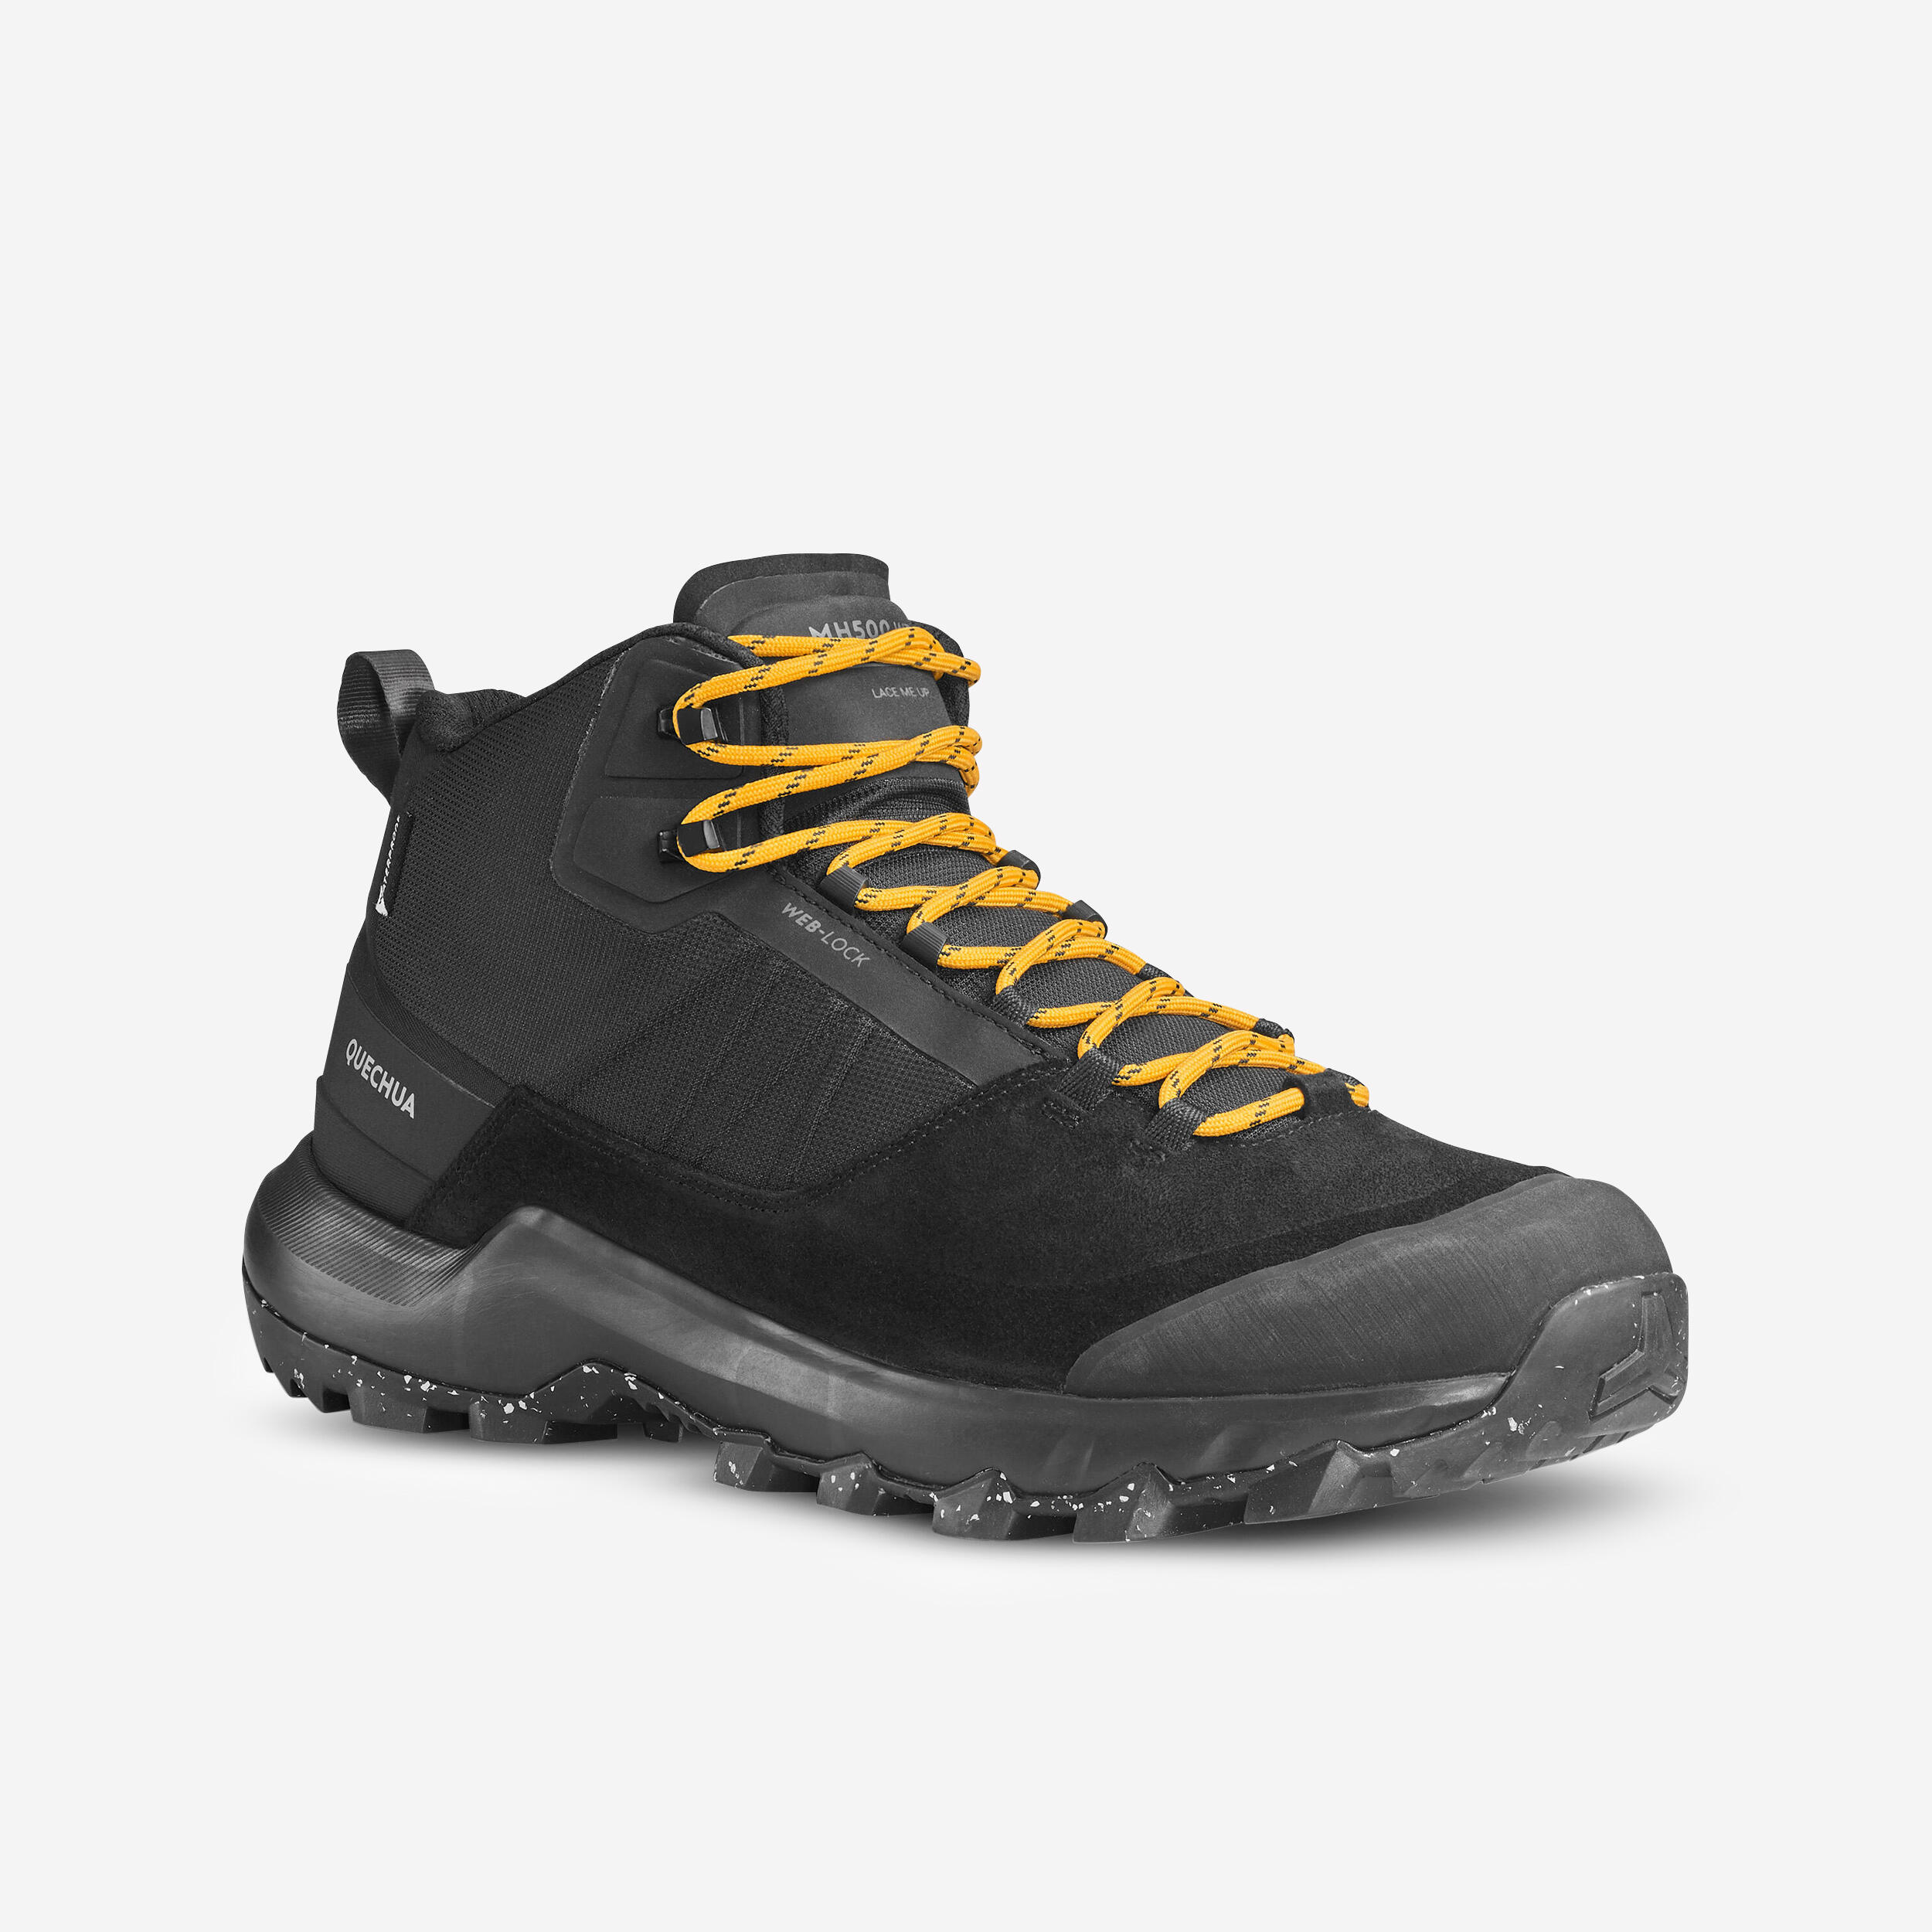 Quechua Men's Waterproof Mountain Walking Shoes - MH500 Mid Black